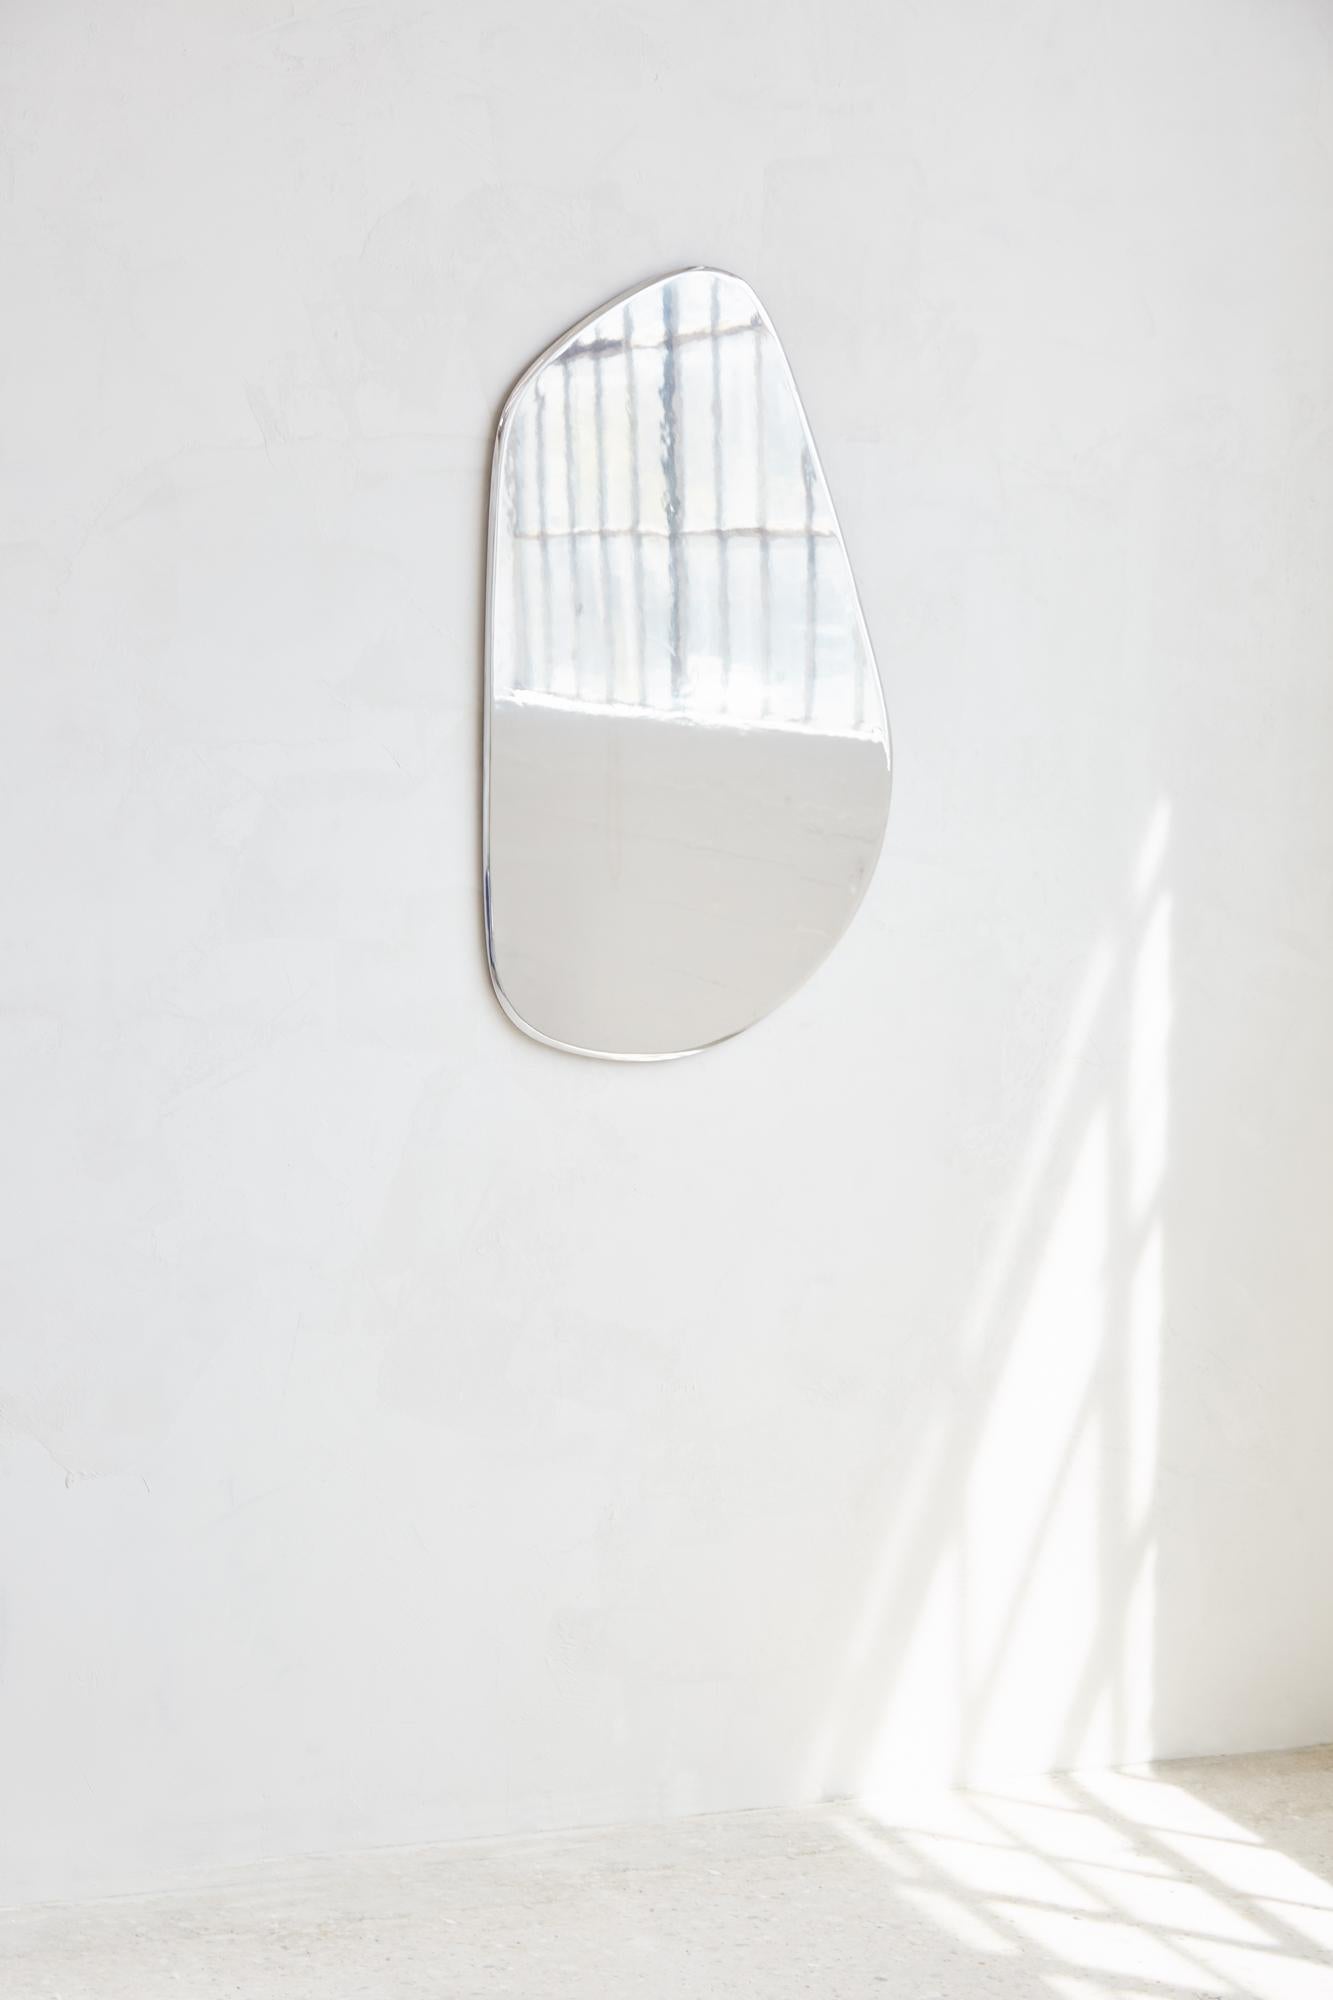 MIROIR GÉOMORPHE
Le miroir Geomorph constitue une rupture visuelle avec le reste de l'ameublement, reprenant la même inspiration en matière de design sans aucun élément en bois visible. Fabriqué en aluminium poli plutôt qu'en verre, le miroir